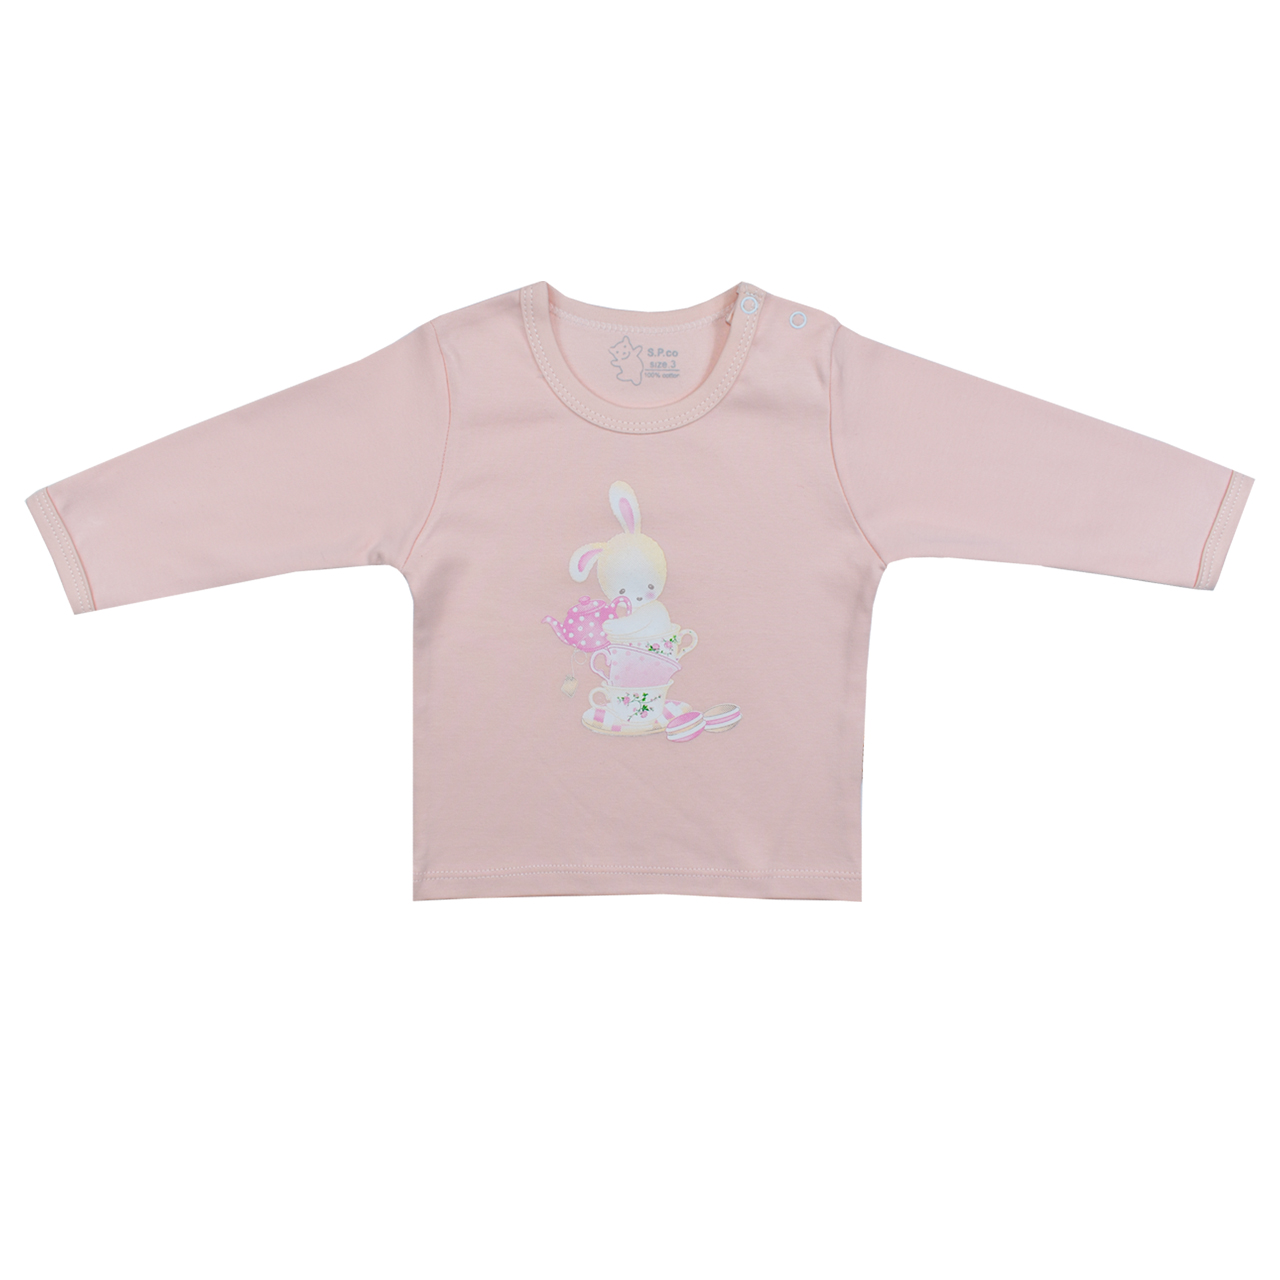 ست تی شرت و شلوار نوزادی اسپیکو مدل پارادایس کد 5 -  - 2